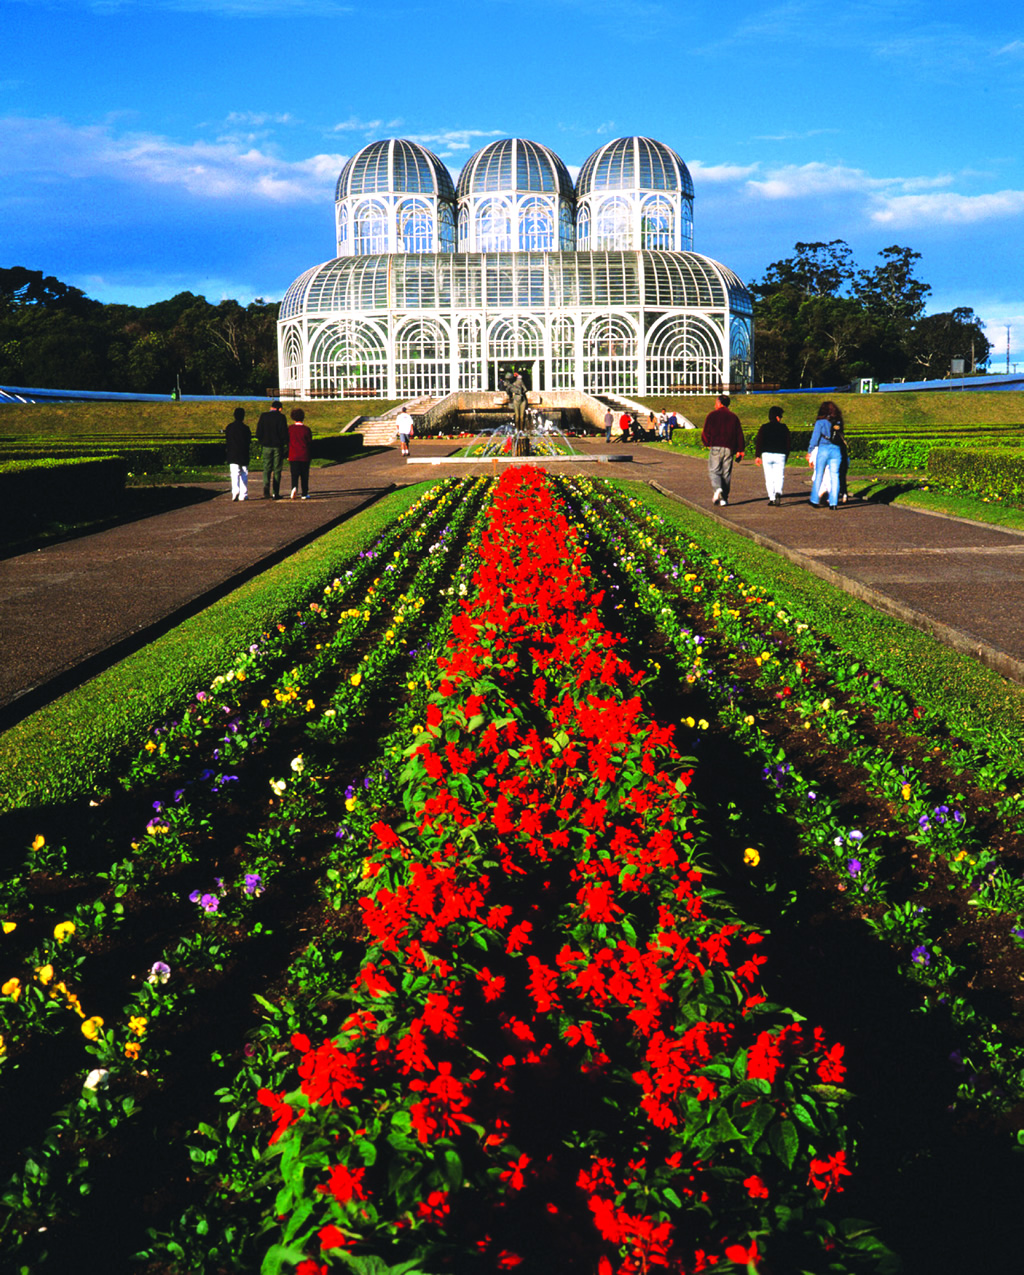 O Jardim Botânico de Curitiba é conhecido pela grande estufa transparente, inspirada em um palácio de cristal londrino, que abriga mais de 50 espécies de plantas Foto: JOEL R./Divulgação